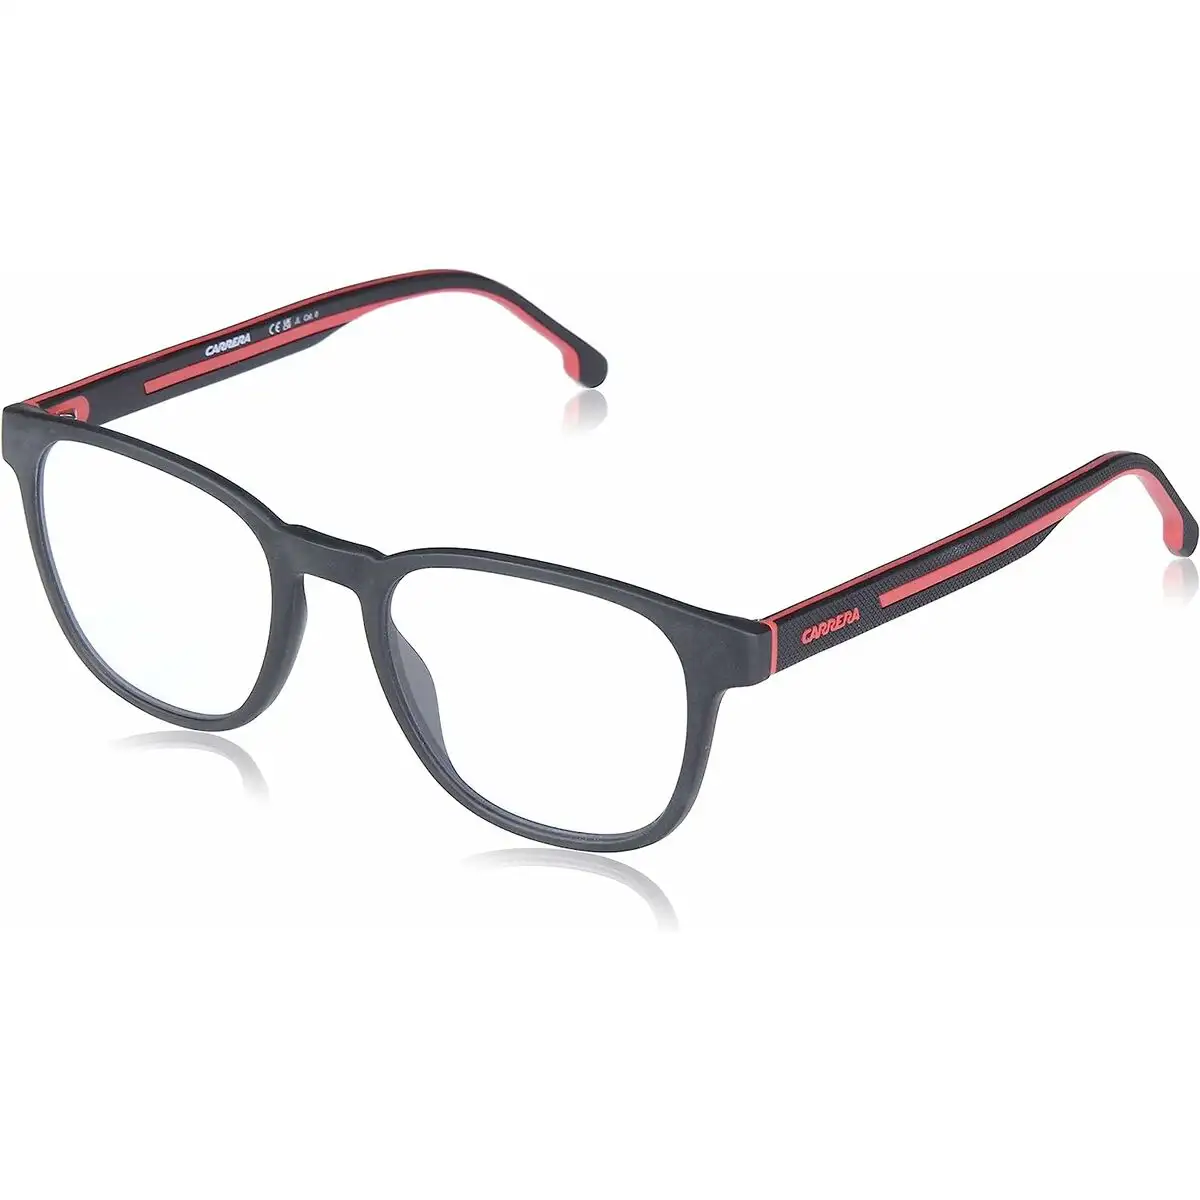 Monture de lunettes unisexe carrera ca8062_cs_4567. DIAYTAR SENEGAL - Où Choisir Devient une Découverte. Explorez notre boutique en ligne et trouvez des articles qui vous surprennent et vous ravissent à chaque clic.